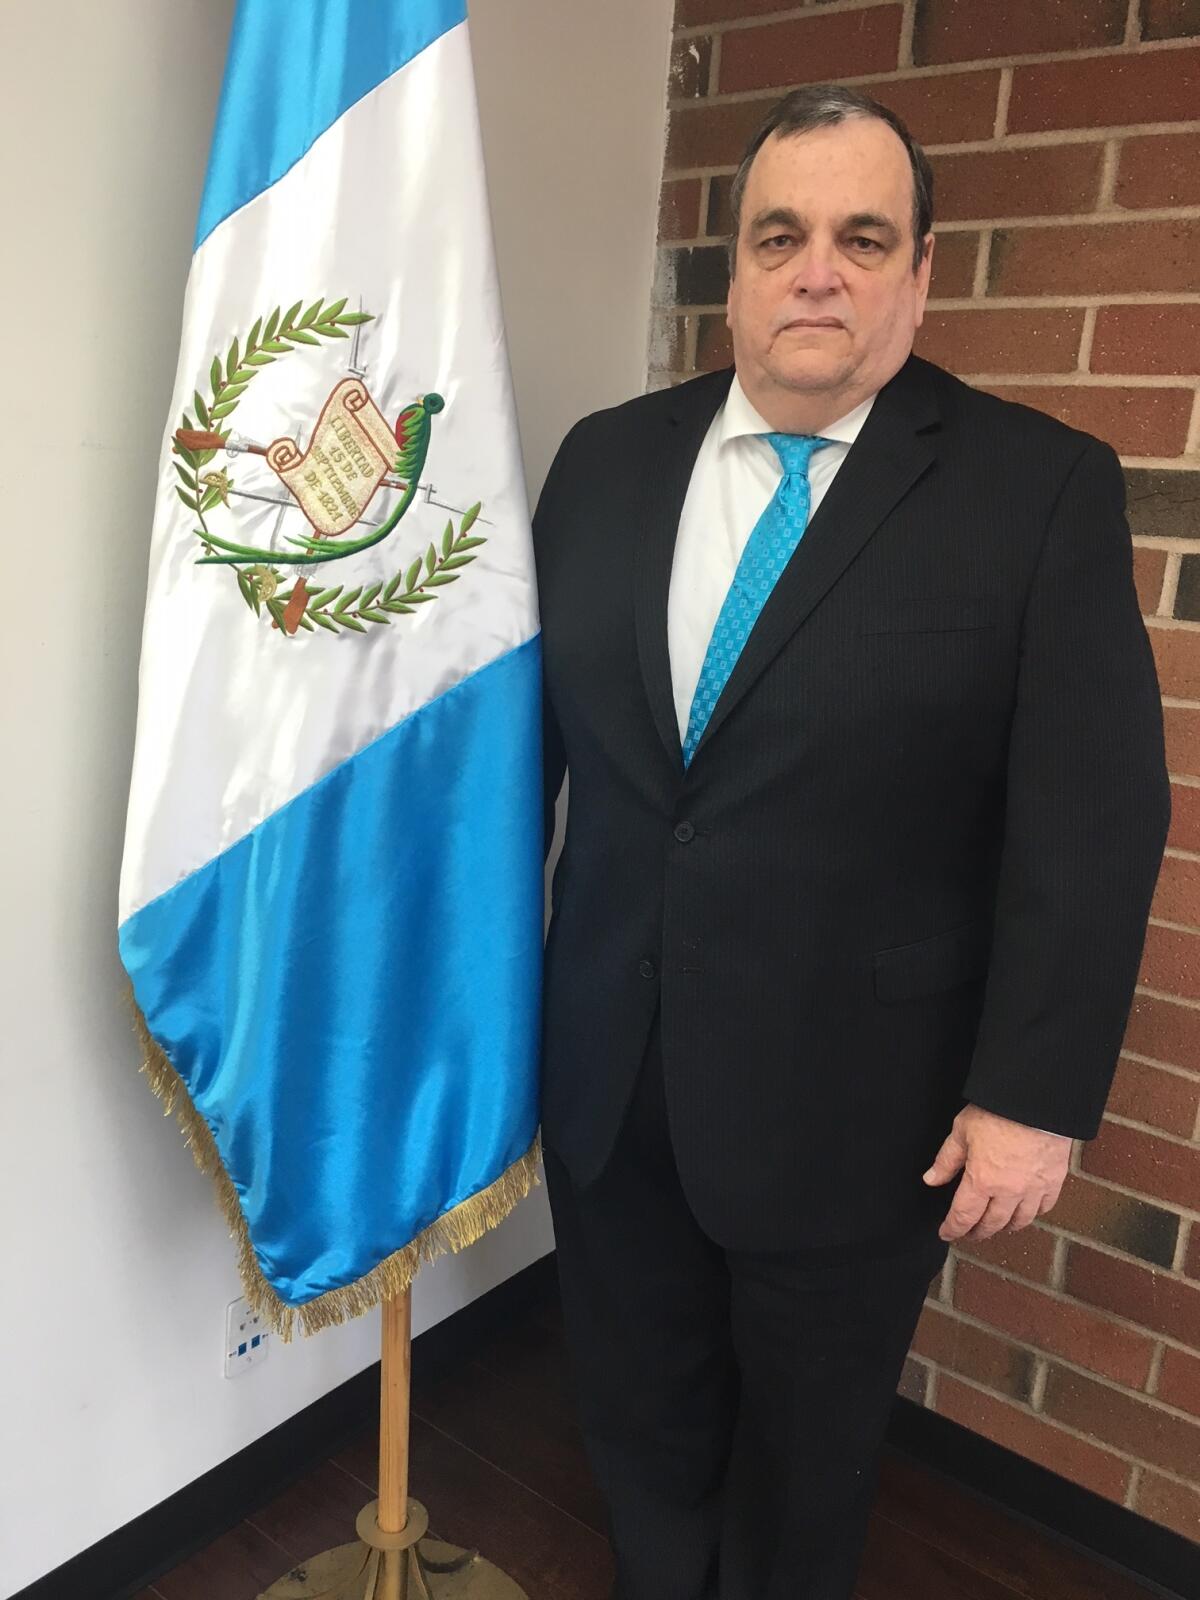 José Barillas Trennert es cónsul general de Guatemala en Los Ángeles desde el 3 de enero de 2018, antes laboró en las oficinas consulares en Houston, Rhode Island y Arizona.